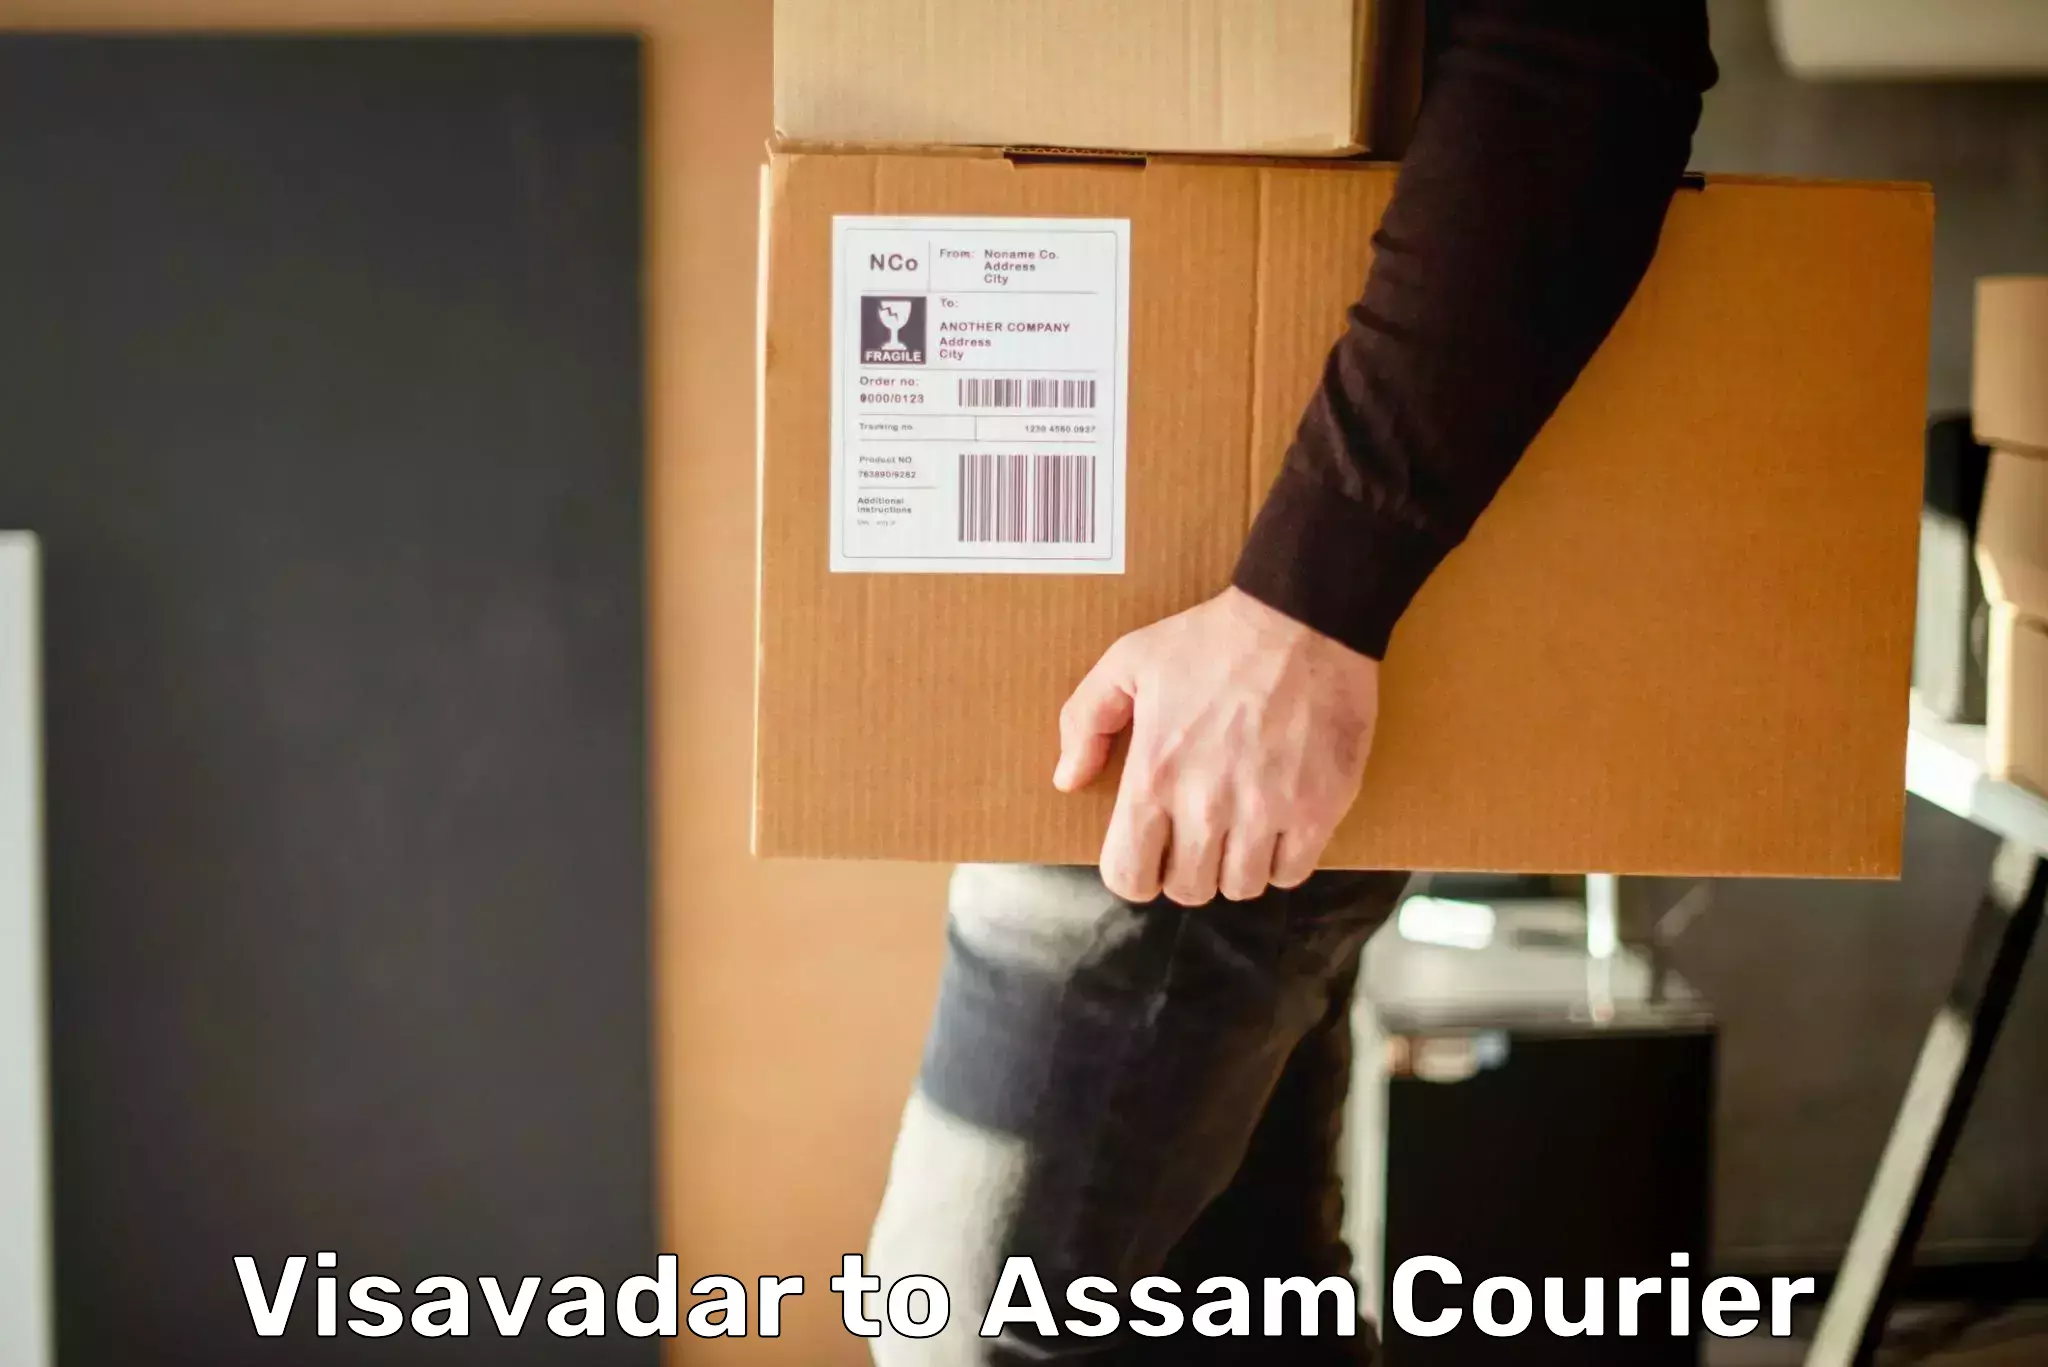 Ocean freight courier Visavadar to Lala Assam